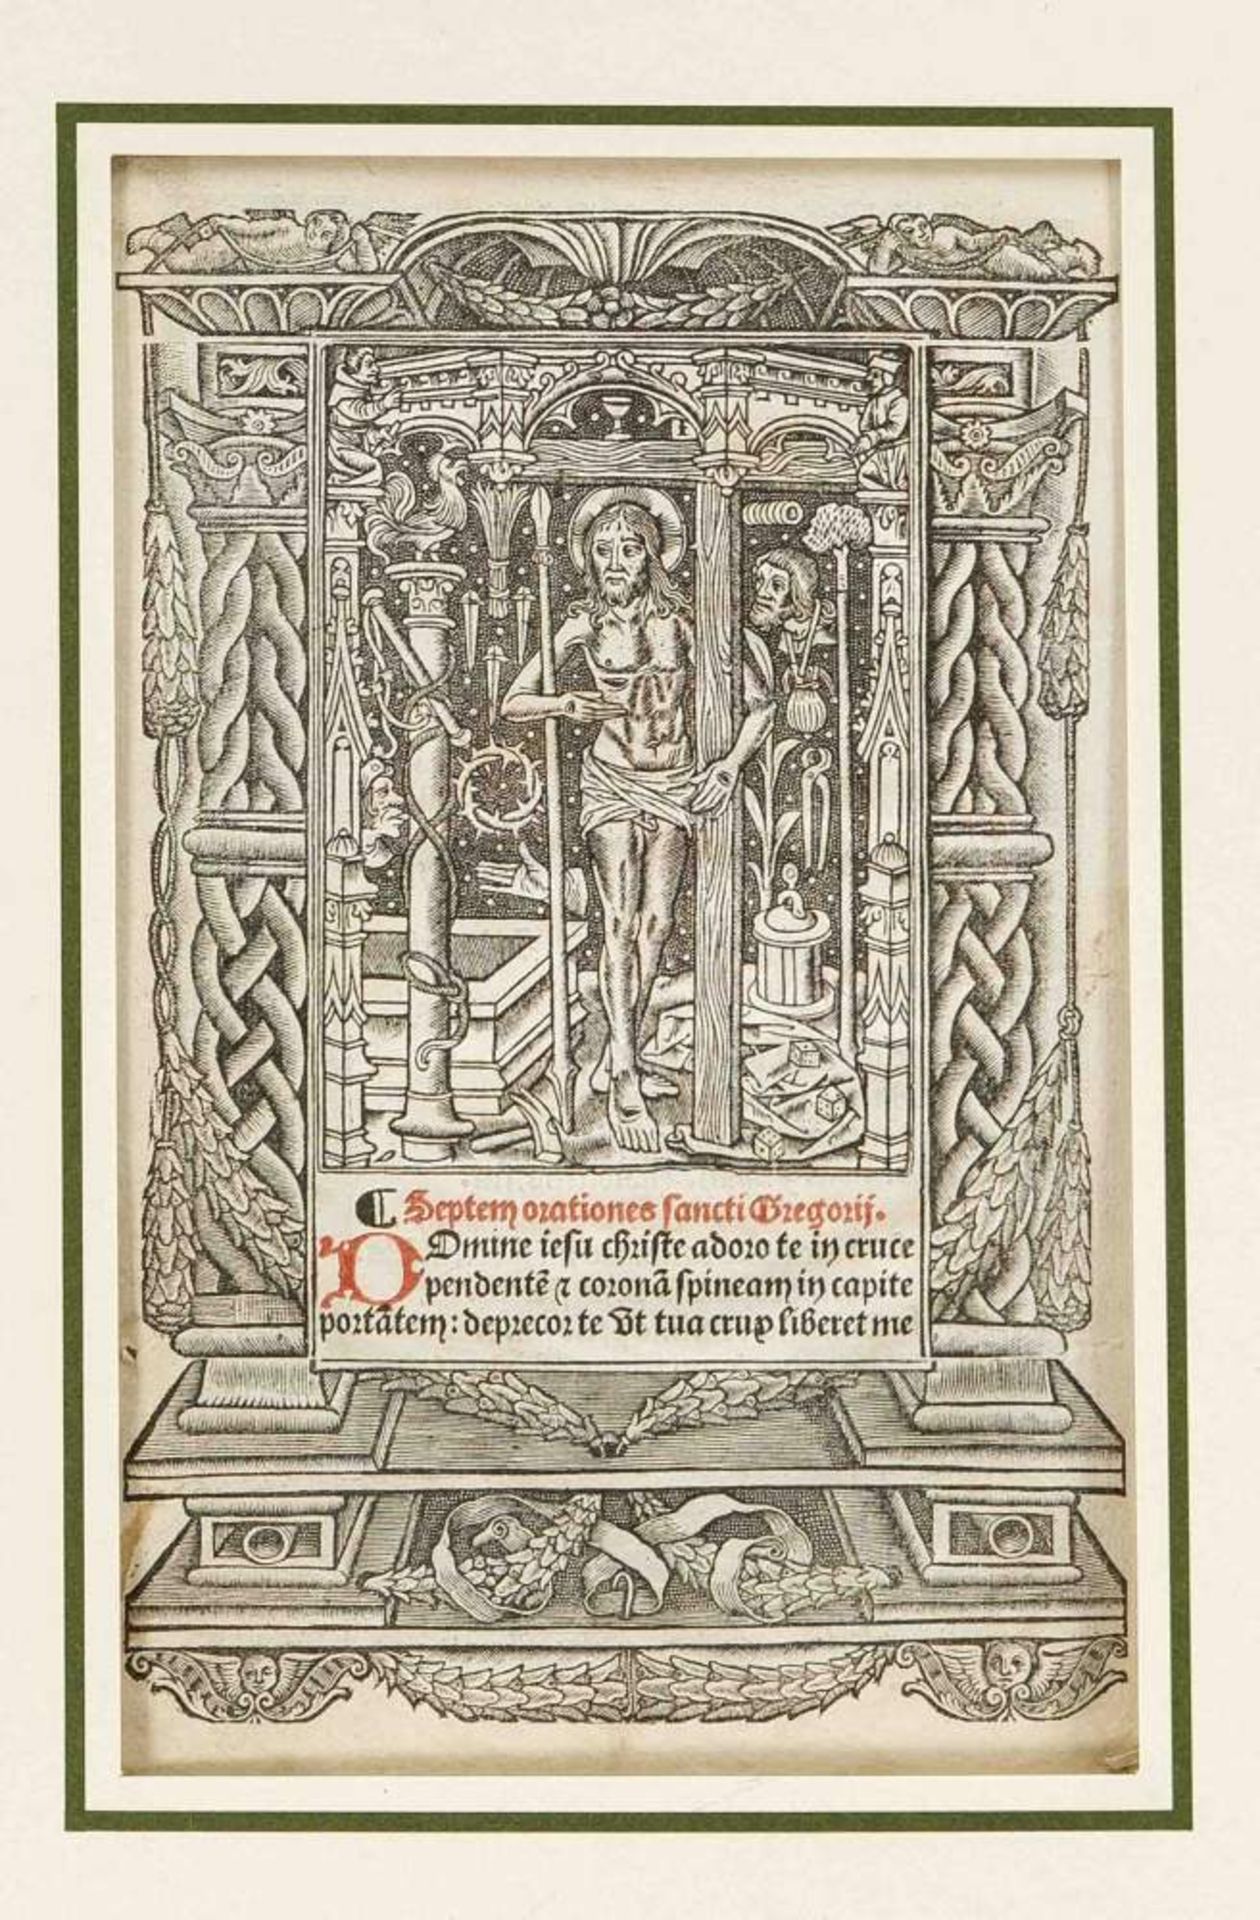 Großes Konvolut von 36 reich illustrierten Stundenbuch-Blättern, Frankreich um 1500,